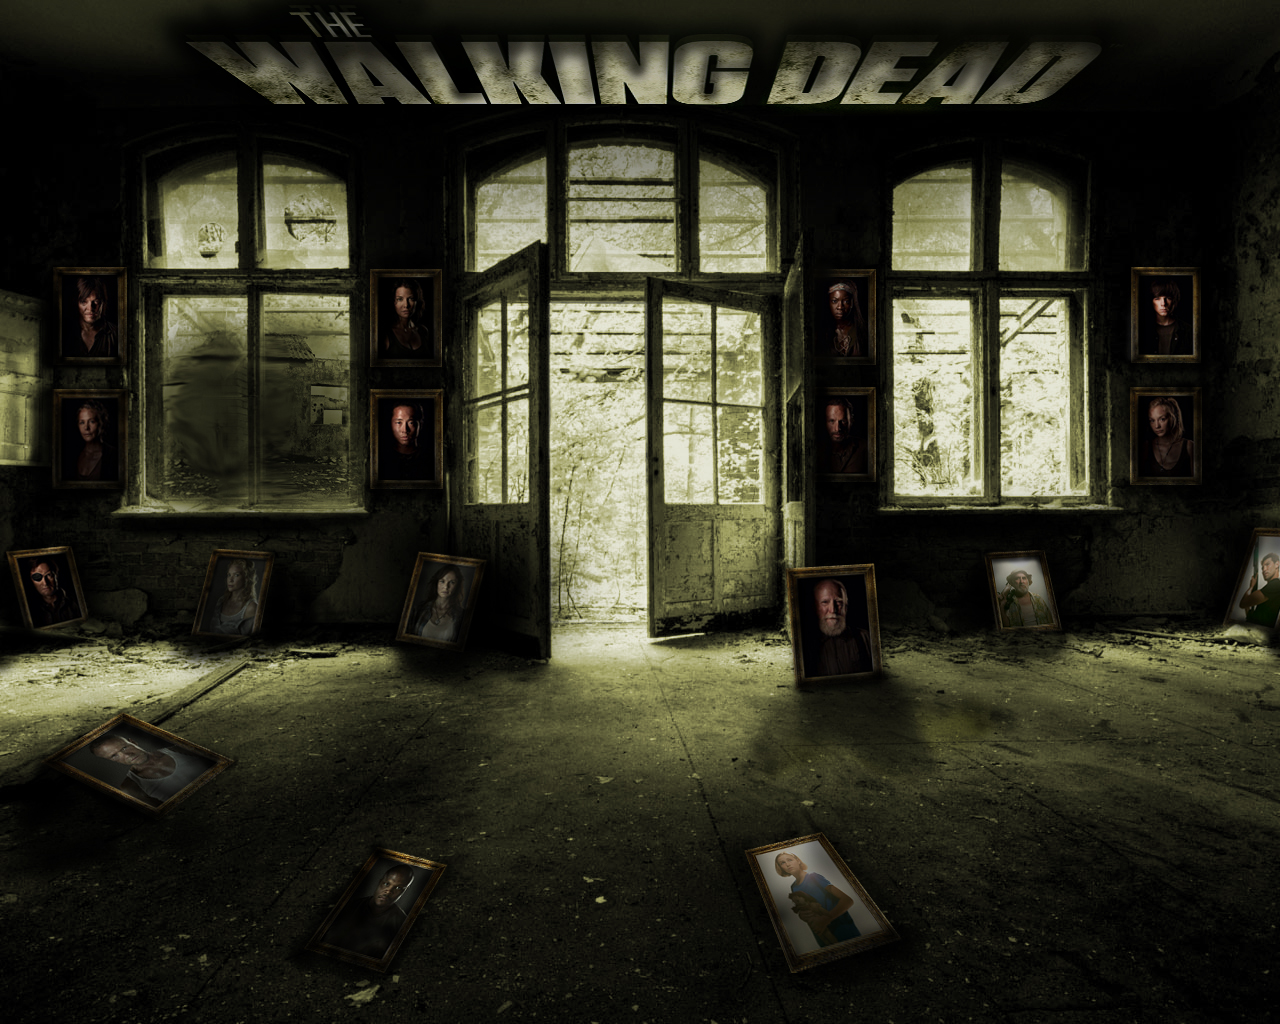 The Walking Dead - Dark Inside Of House - HD Wallpaper 